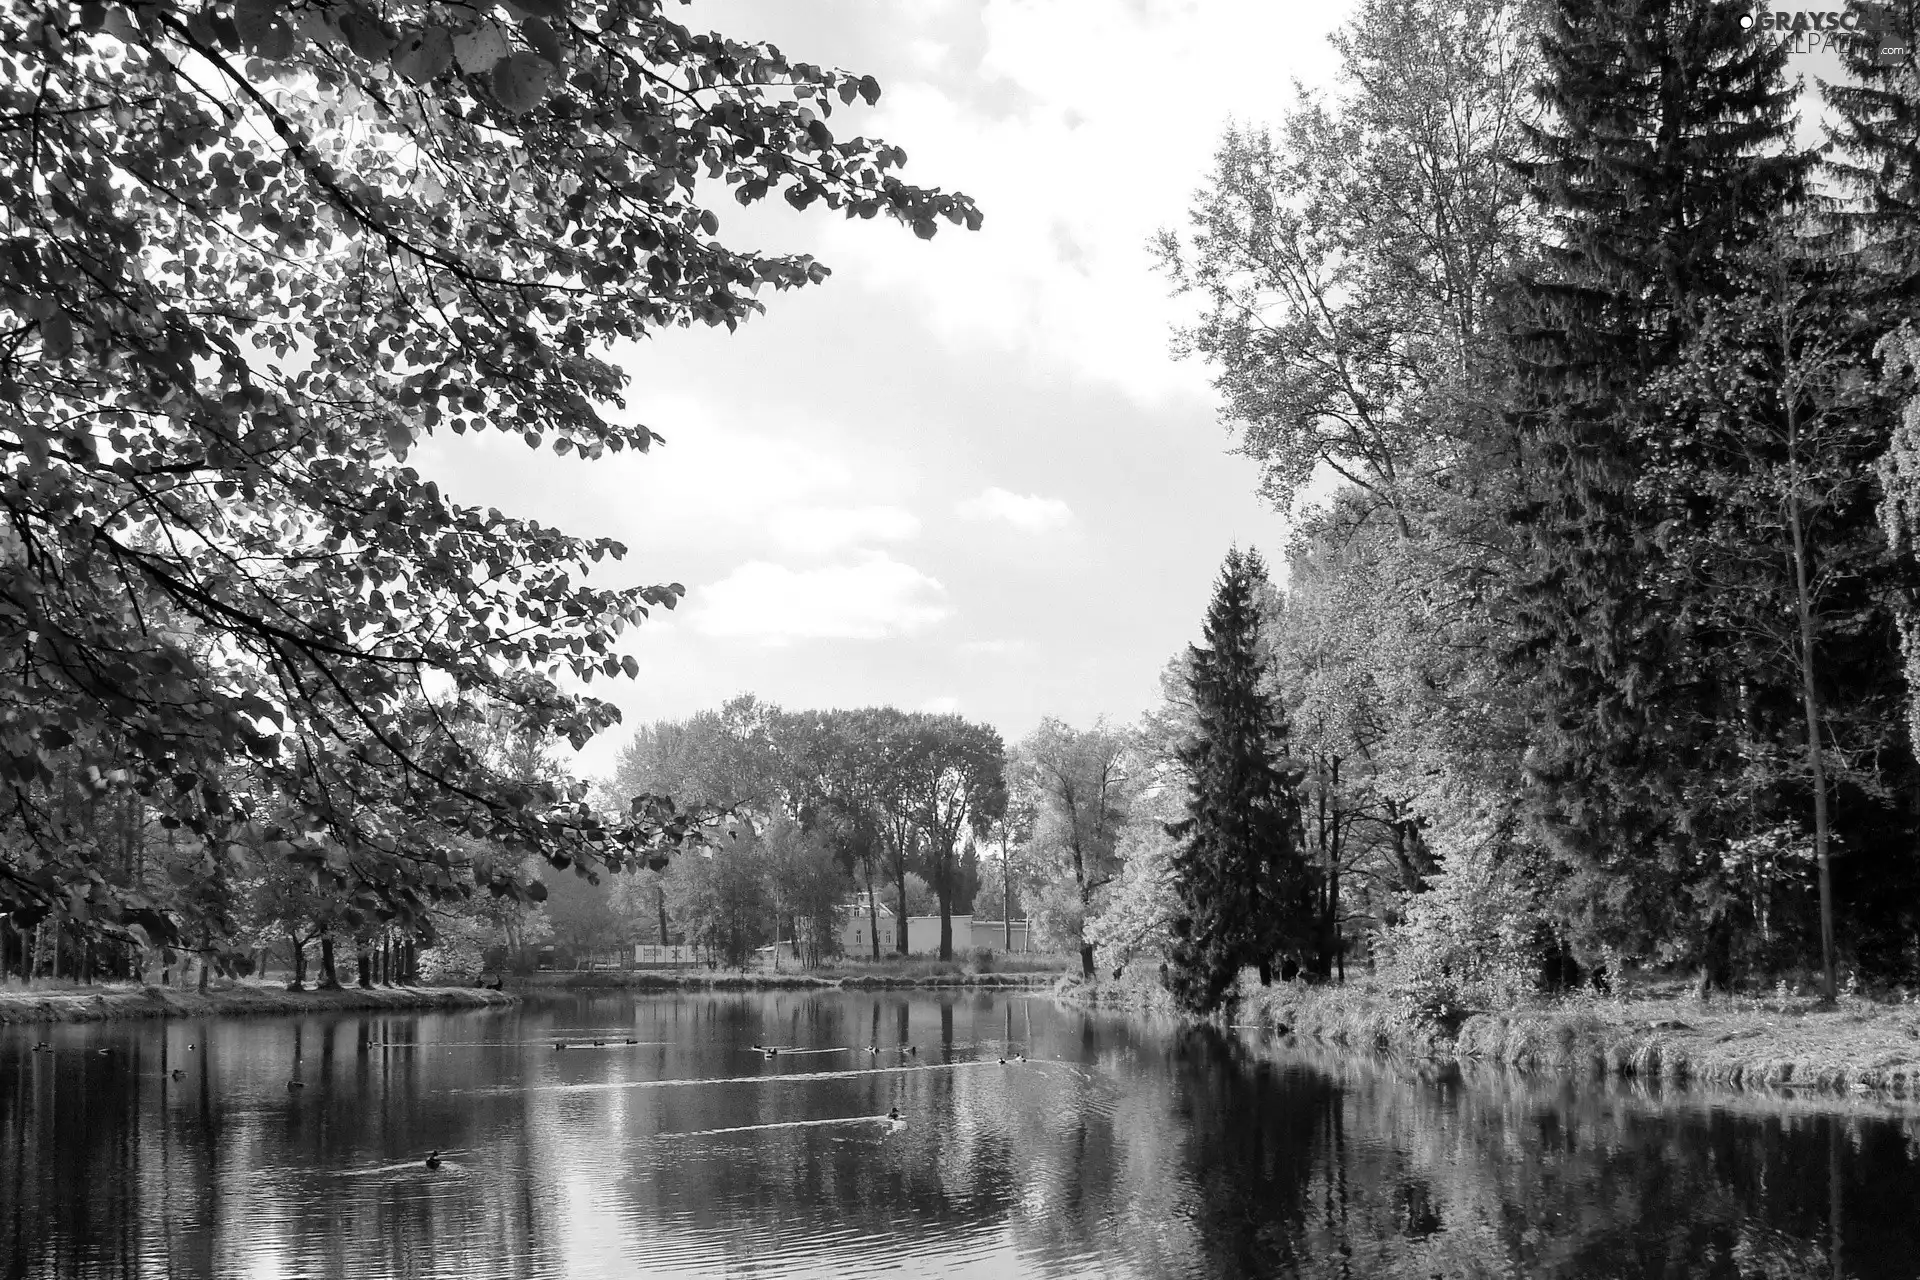 River, Park, autumn, ducks